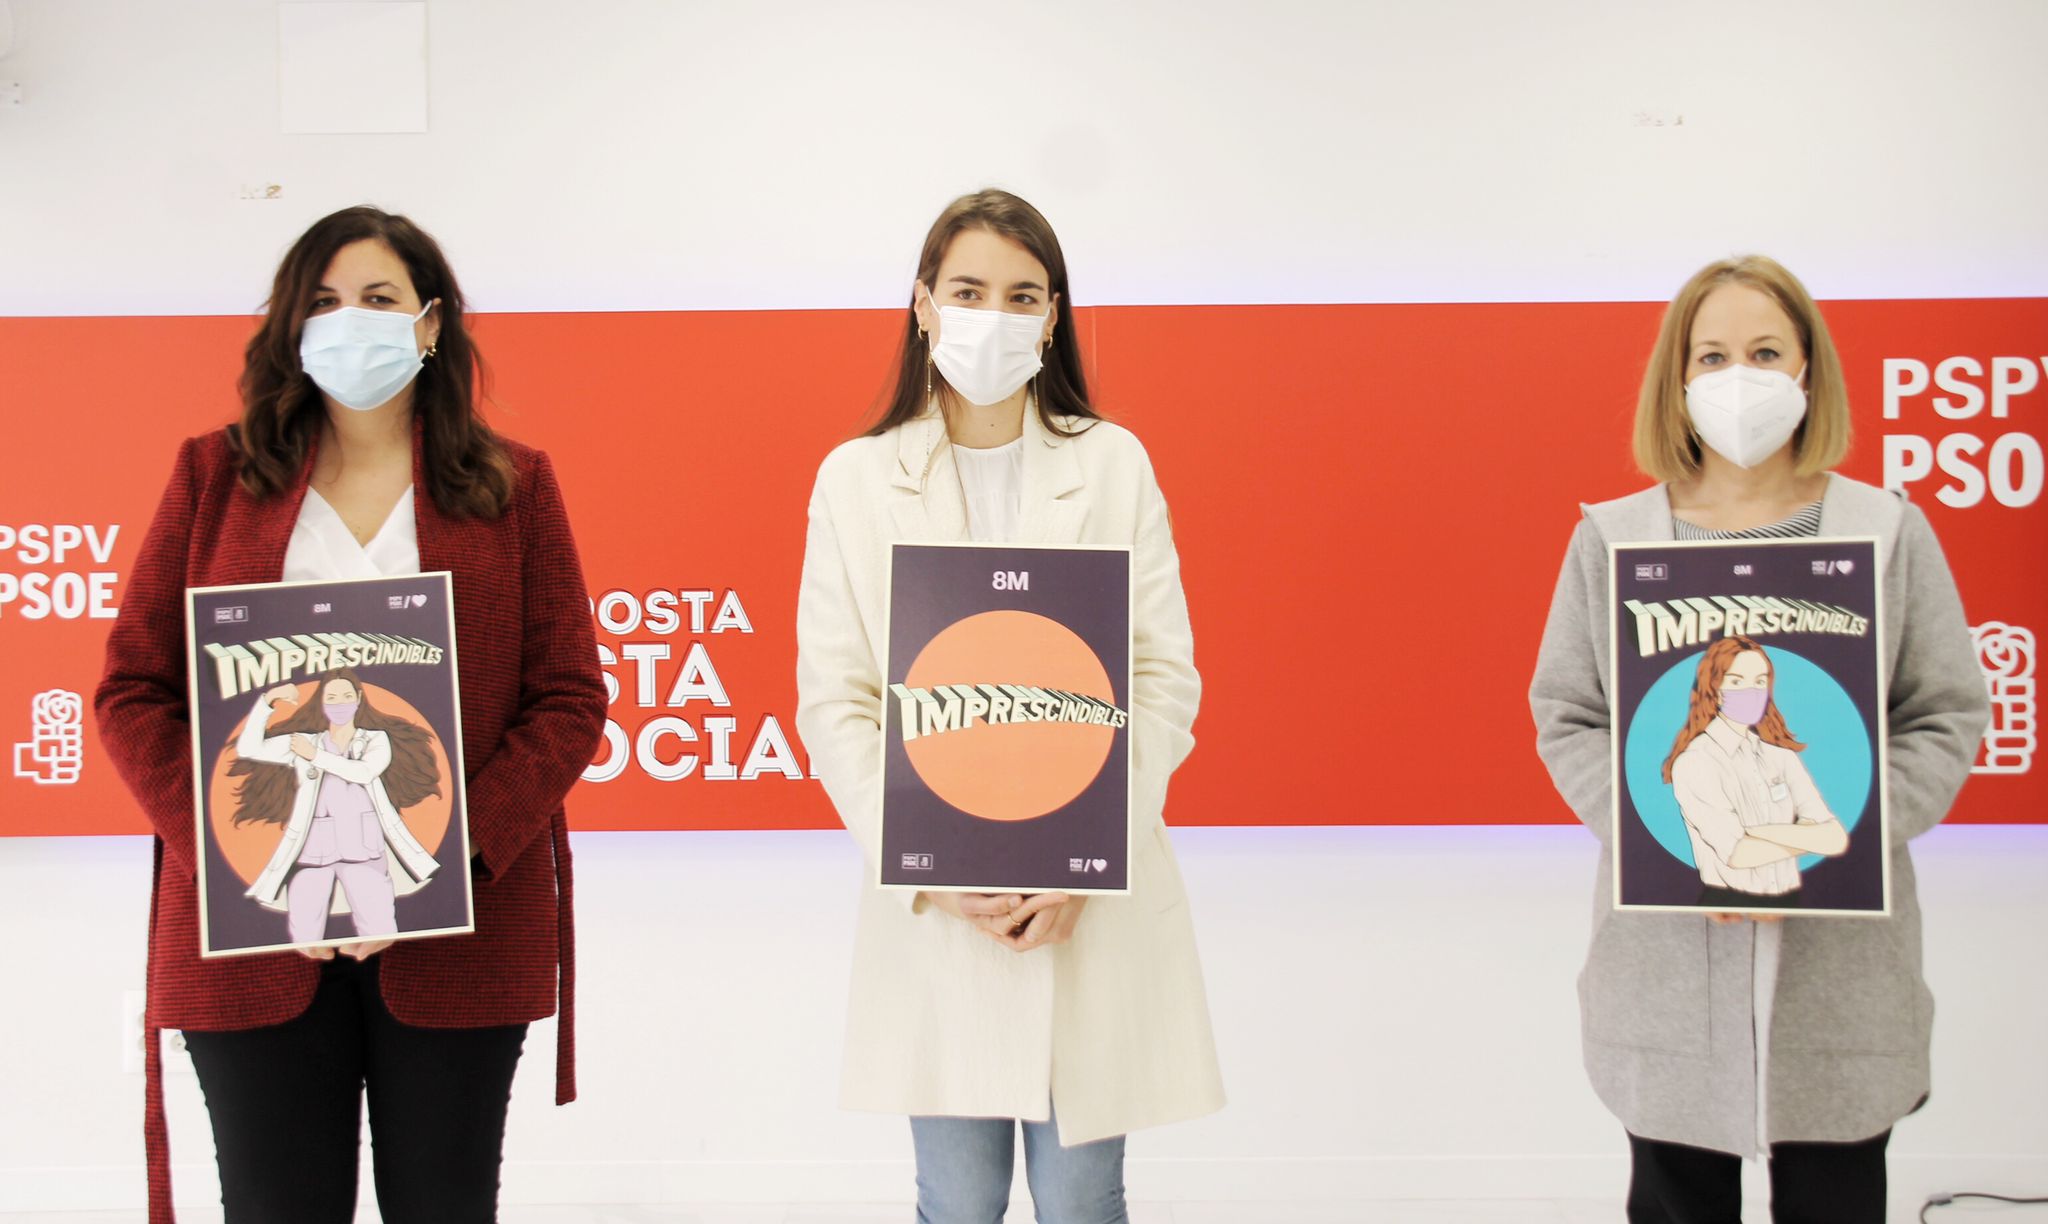 You are currently viewing El PSPV-PSOE presenta la seua campanya per al 8M per a reivindicar que les dones “continuaran sent imprescindibles després de la pandèmia”